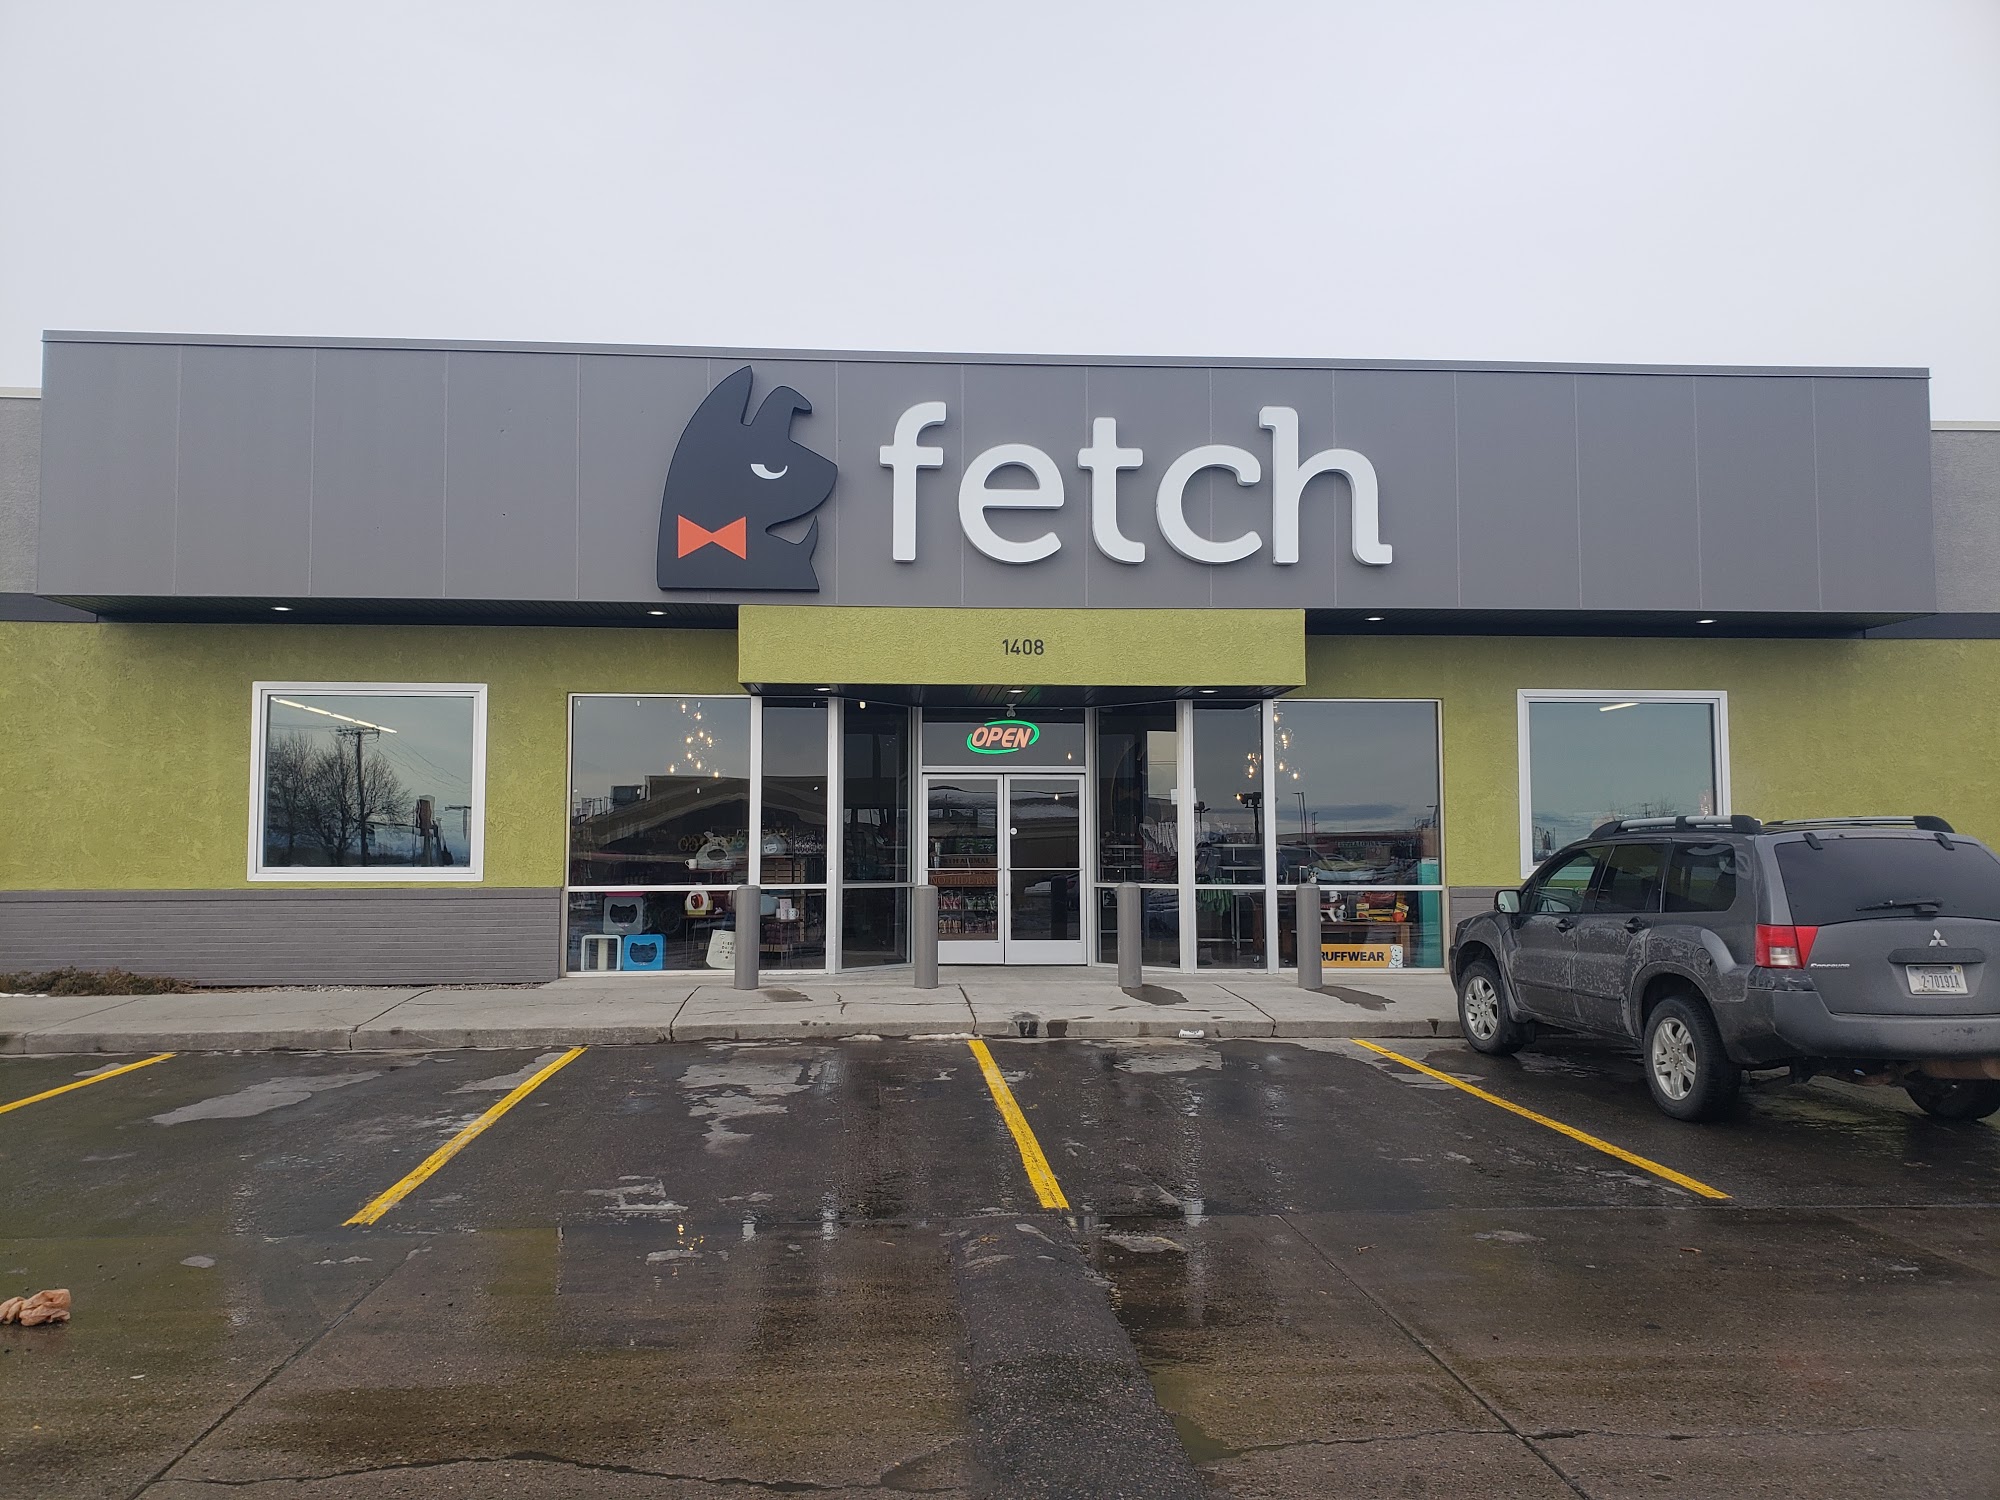 Fetch Pet Boutique